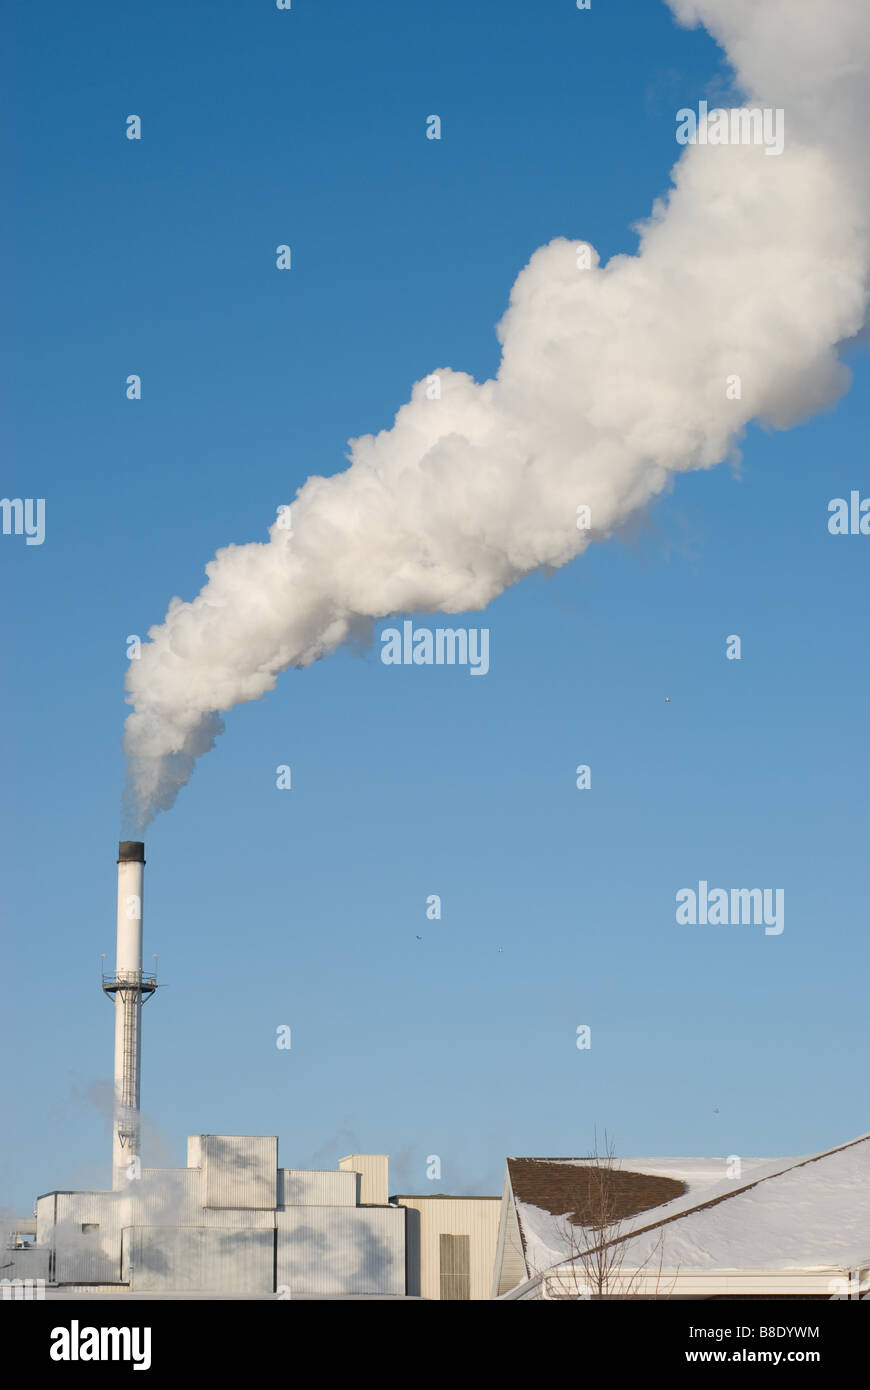 Le bocchette di ciminiere billowy vapore contro un freddo chiaro cielo blu Foto Stock